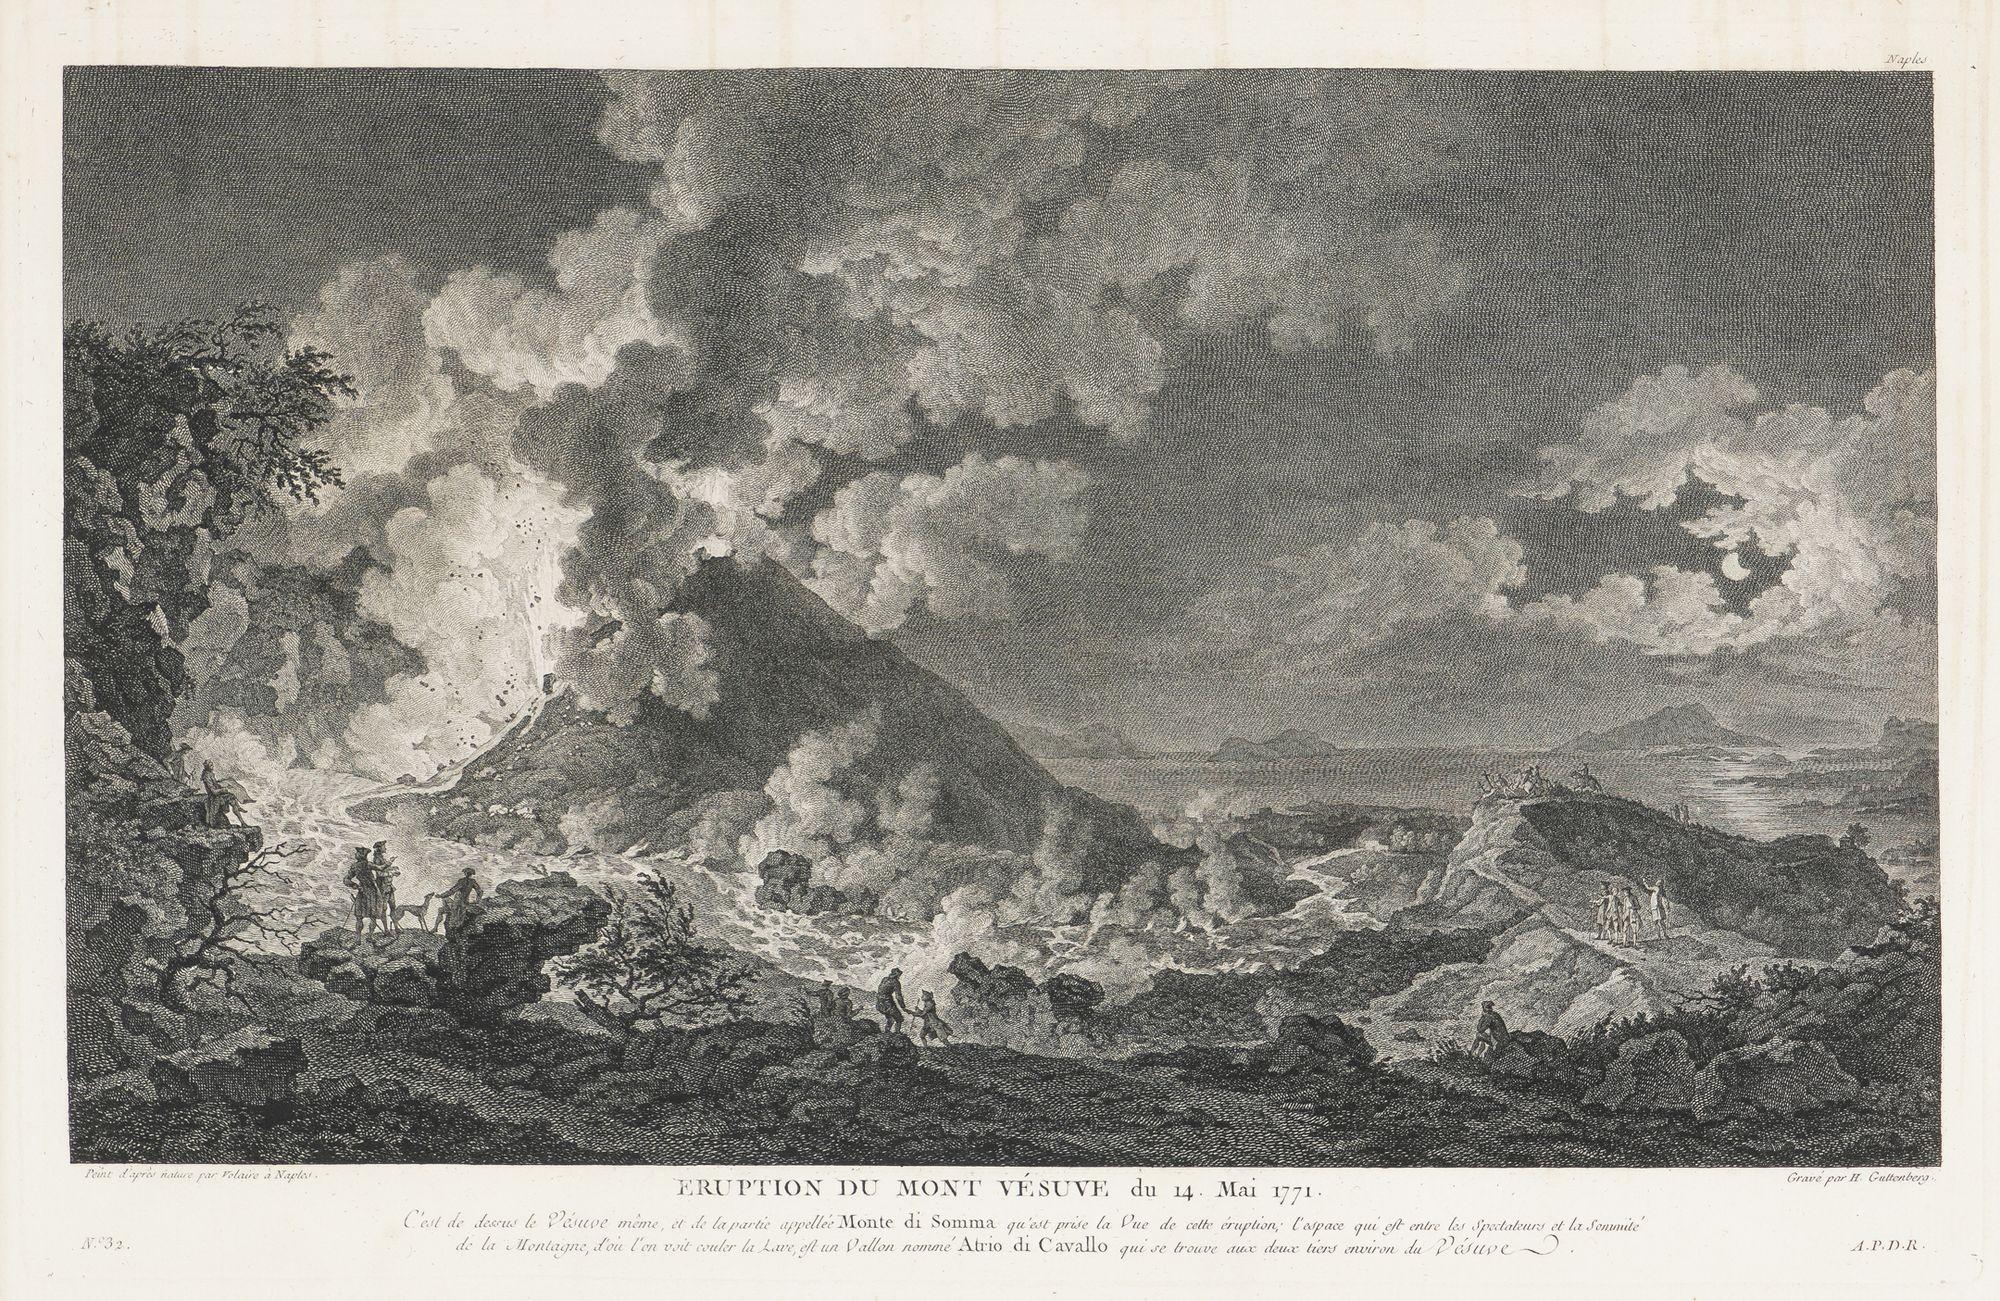 Eruption du Mont Vésuve, du 14 Mai, 1771 (Eruption des Vesuvs, 14. Mai 1771) ist ein Stich von Heinrich Guttenberg nach einem Gemälde von Pierre-Jacques Volaire.

In dieser imposanten Komposition sprudelt geschmolzene Lava aus dem Schlund des Vesuvs